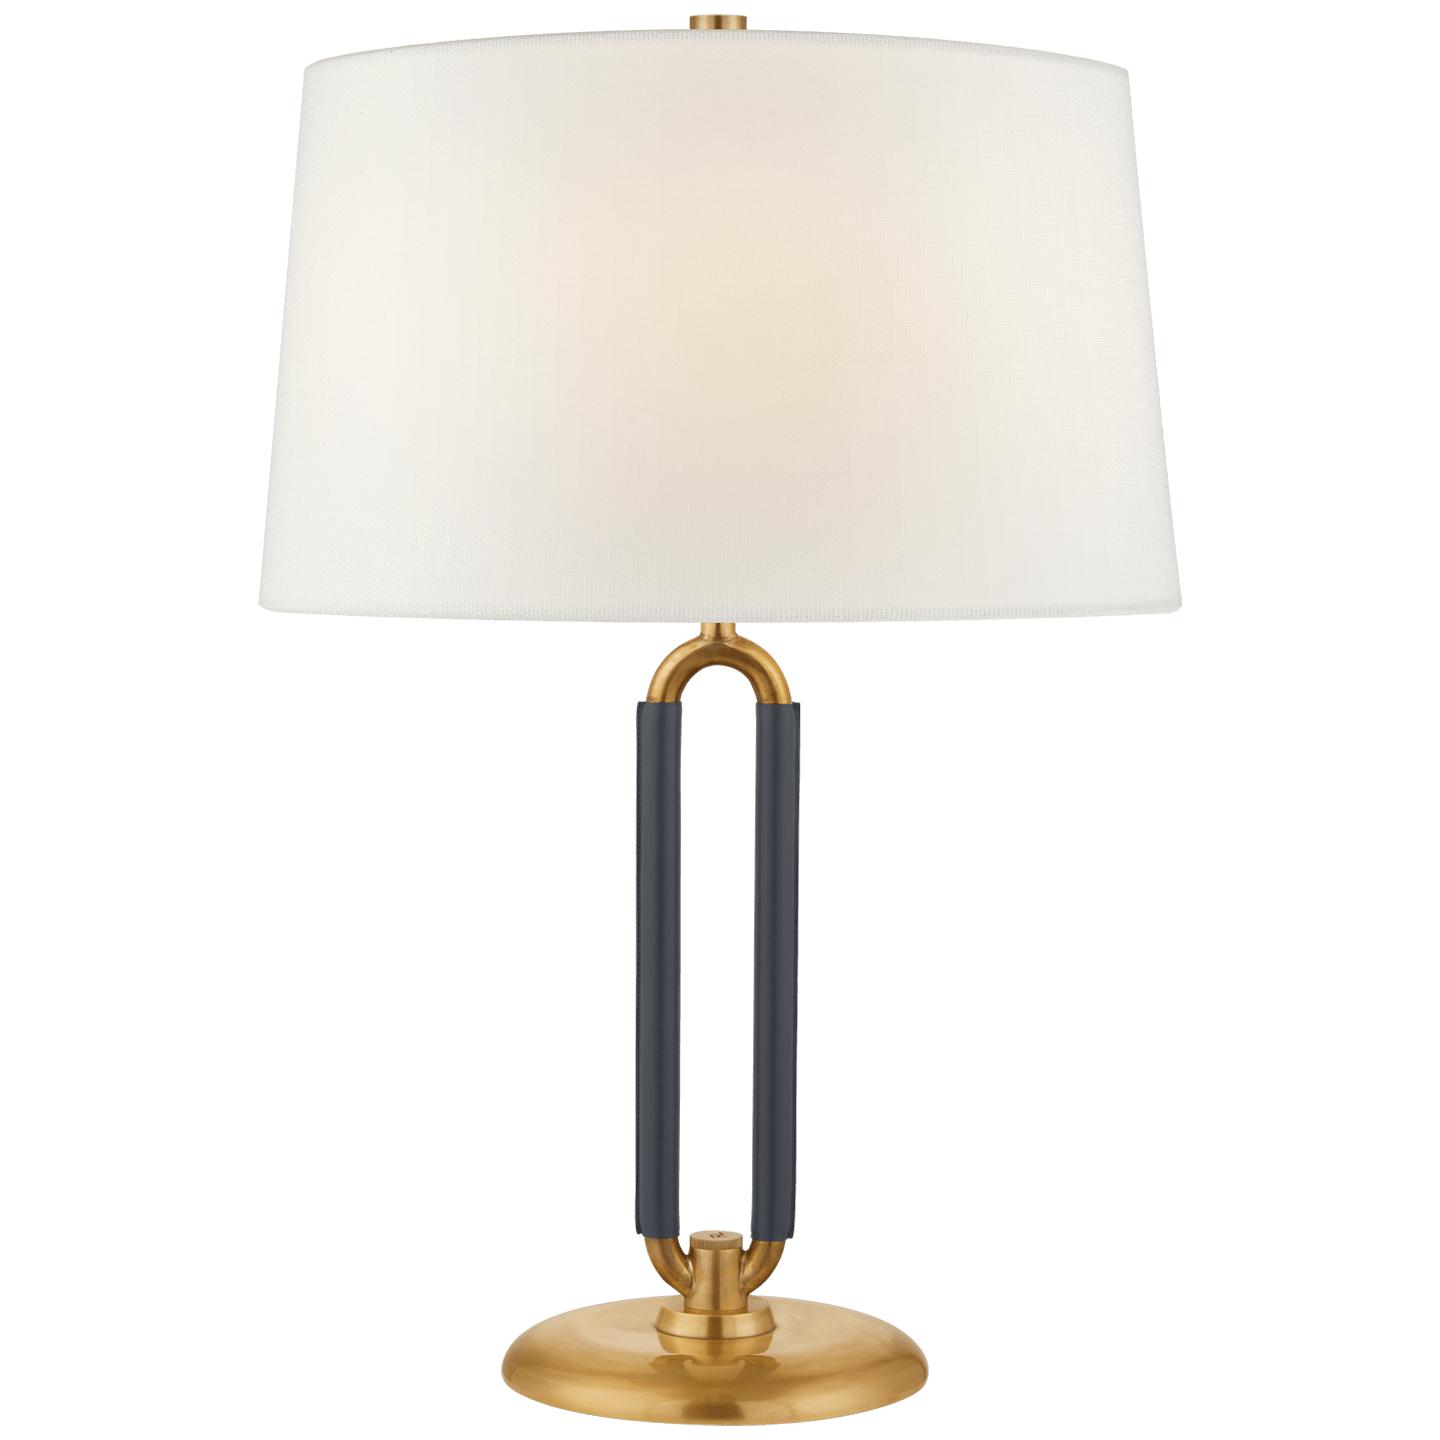 Купить Настольная лампа Cody Medium Table Lamp в интернет-магазине roooms.ru